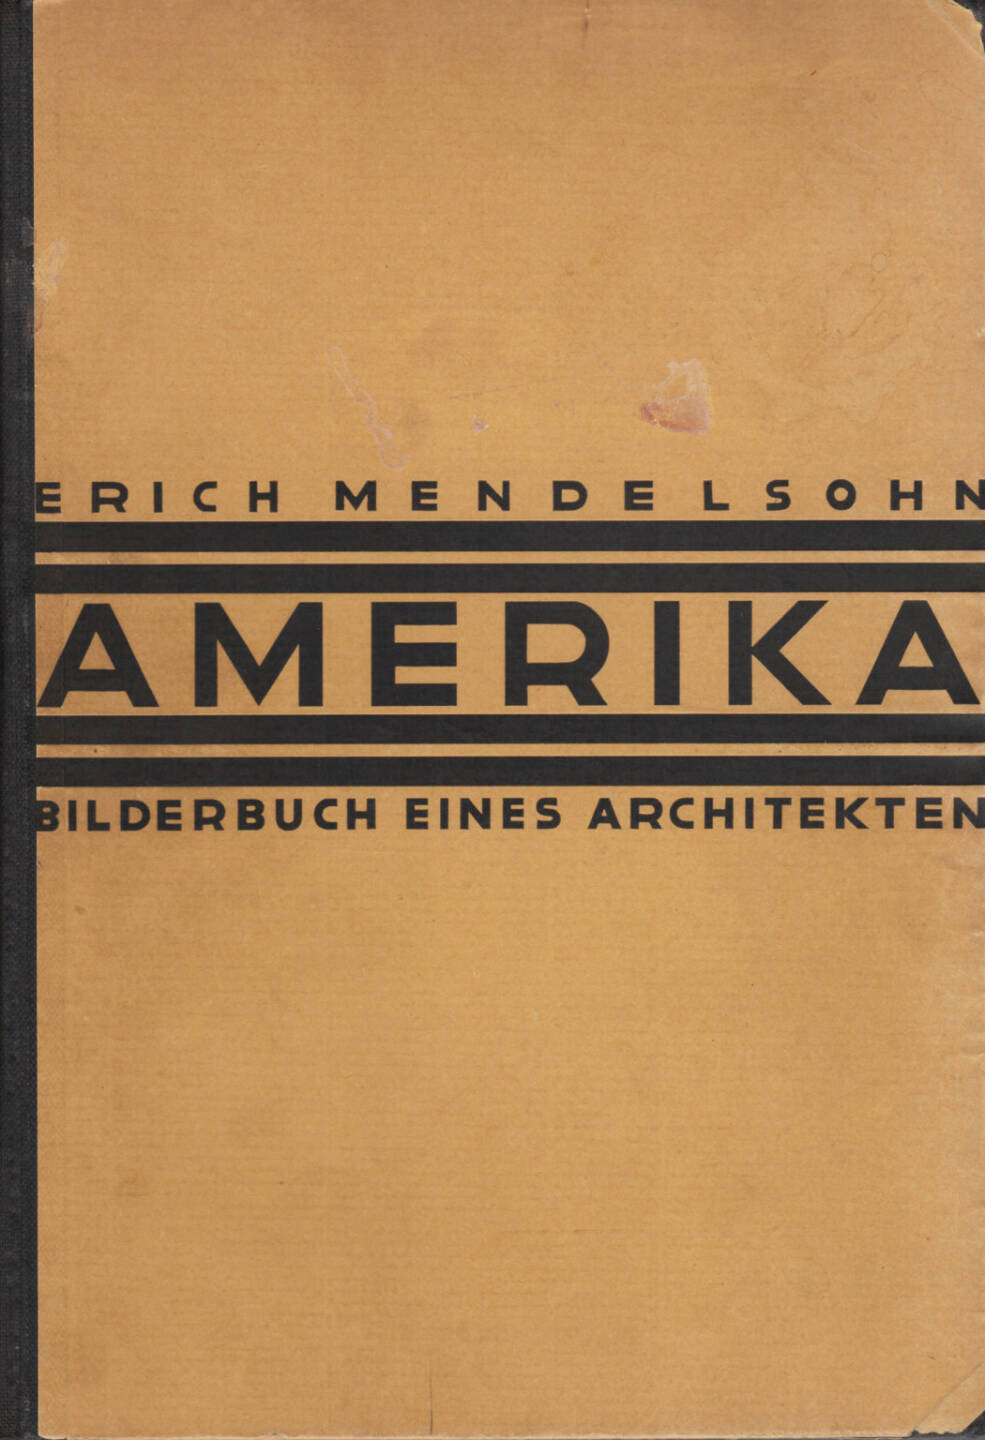 Erich Mendelsohn - Amerika: Bilderbuch eines Architekten, Rudolf Mosse Buchverlag 1926, Cover - http://josefchladek.com/book/erich_mendelsohn_-_amerika_bilderbuch_eines_architekten